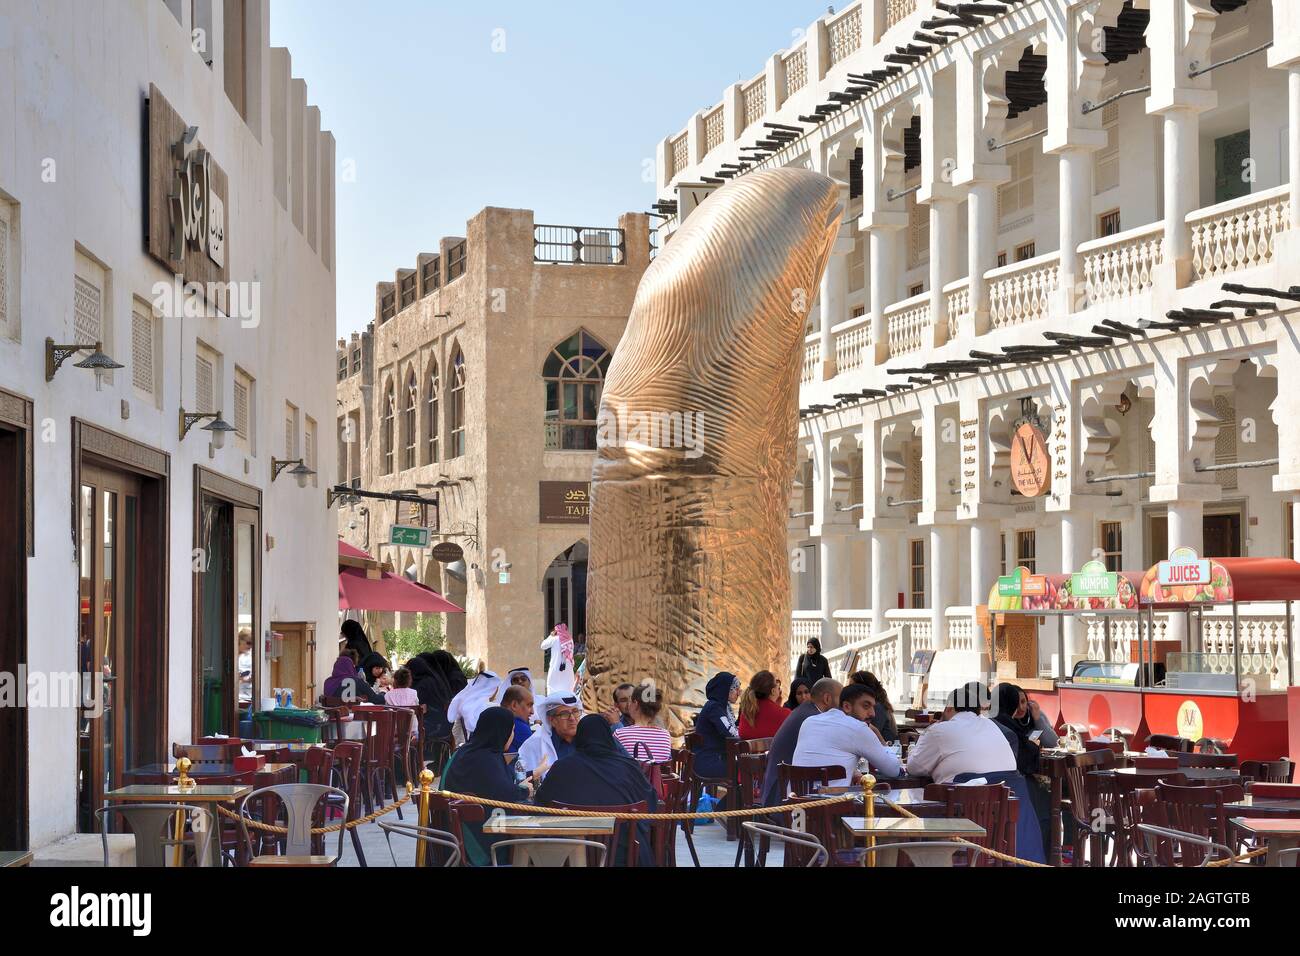 Doha, Qatar - novembre 21. 2019. Le pouce est une sculpture en forme de pouce géant, pièce d'art de l'artiste français renommé Cesar Baldaccini Banque D'Images